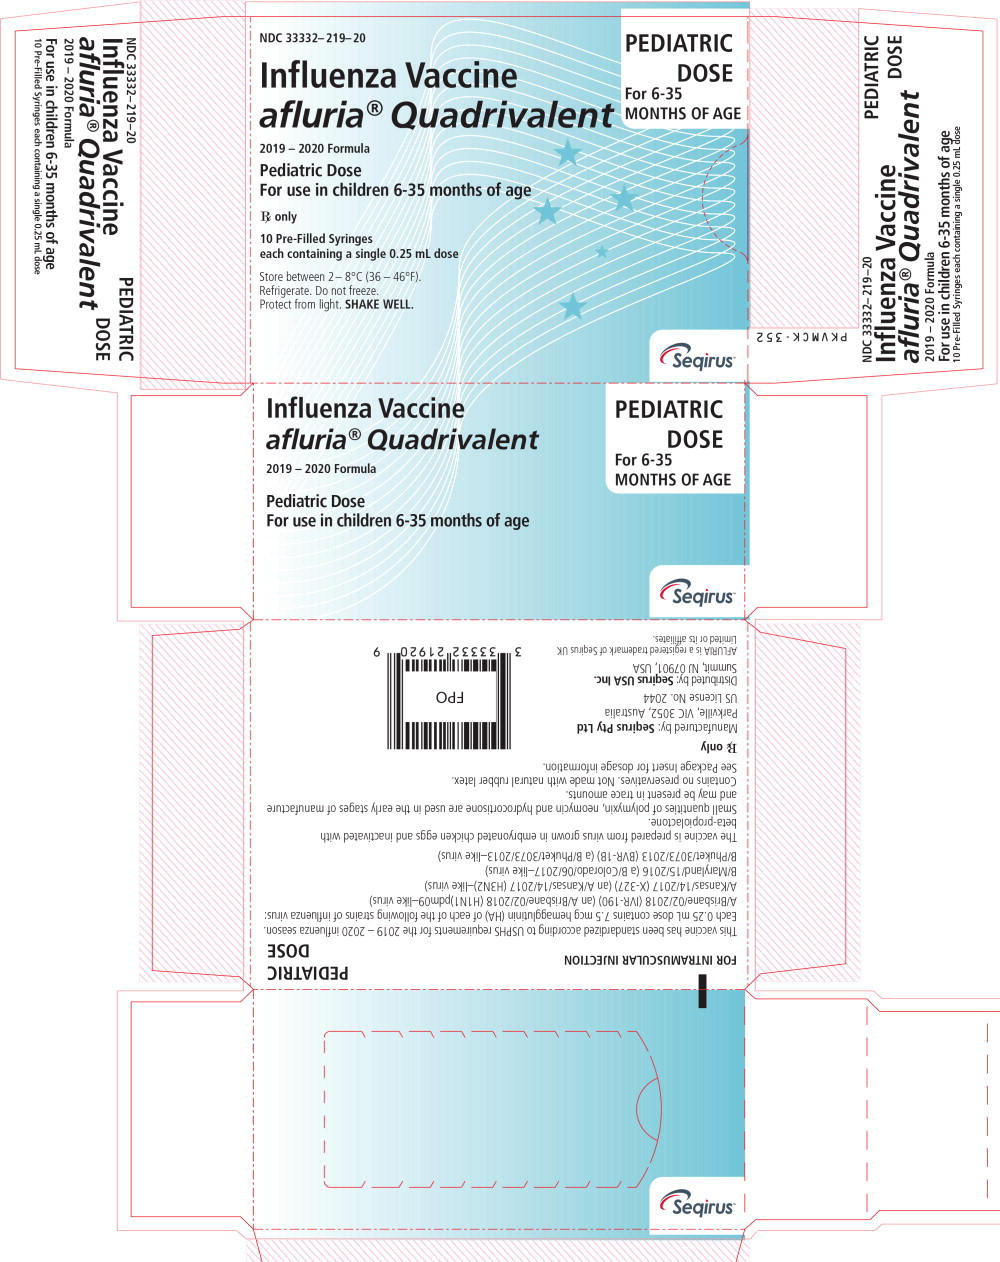 Principal Display Panel - 0.25 mL Kankakee Carton Label
